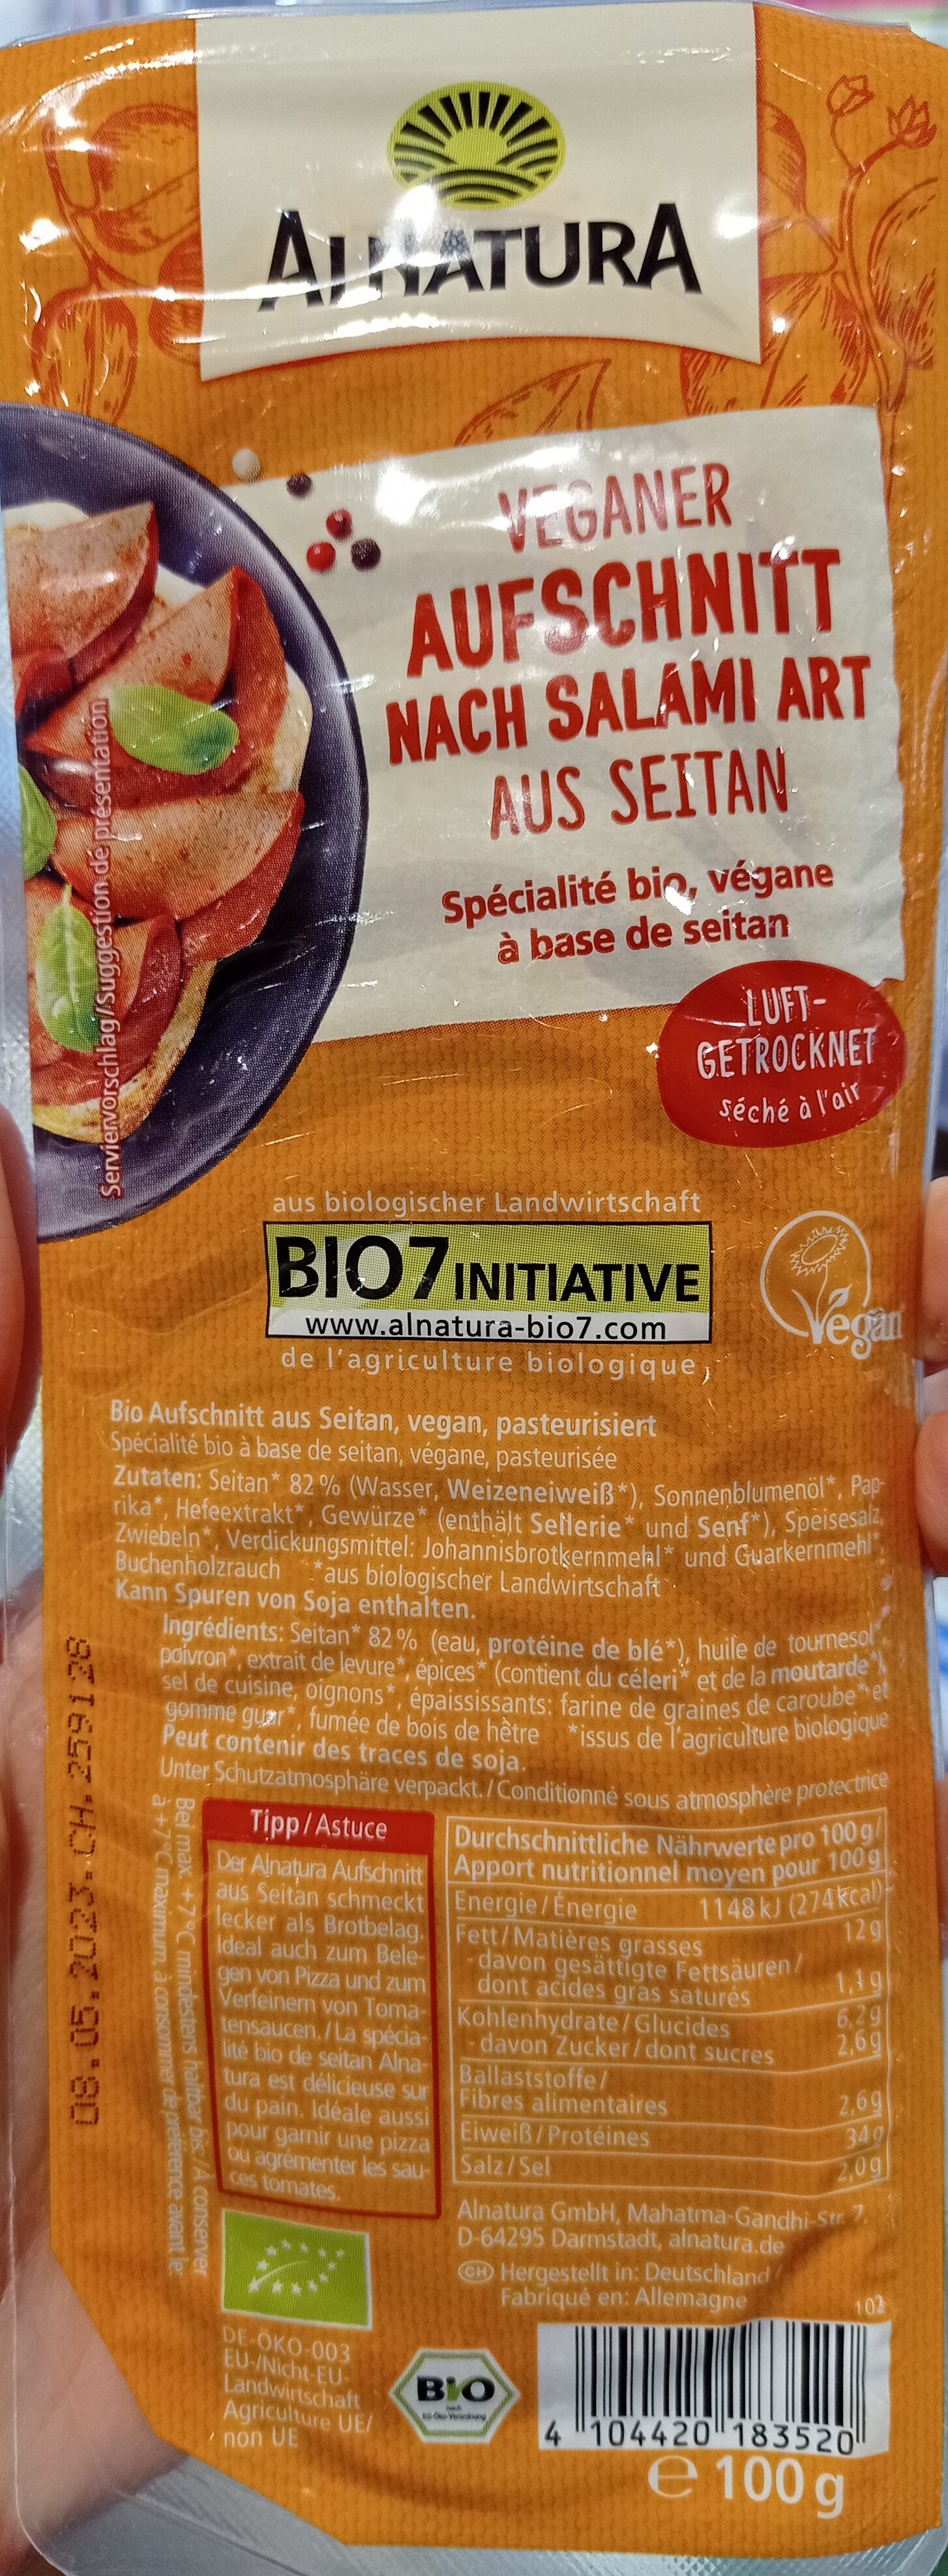 Veganer Aufschnitt nach salami art aus seitan - Produkt